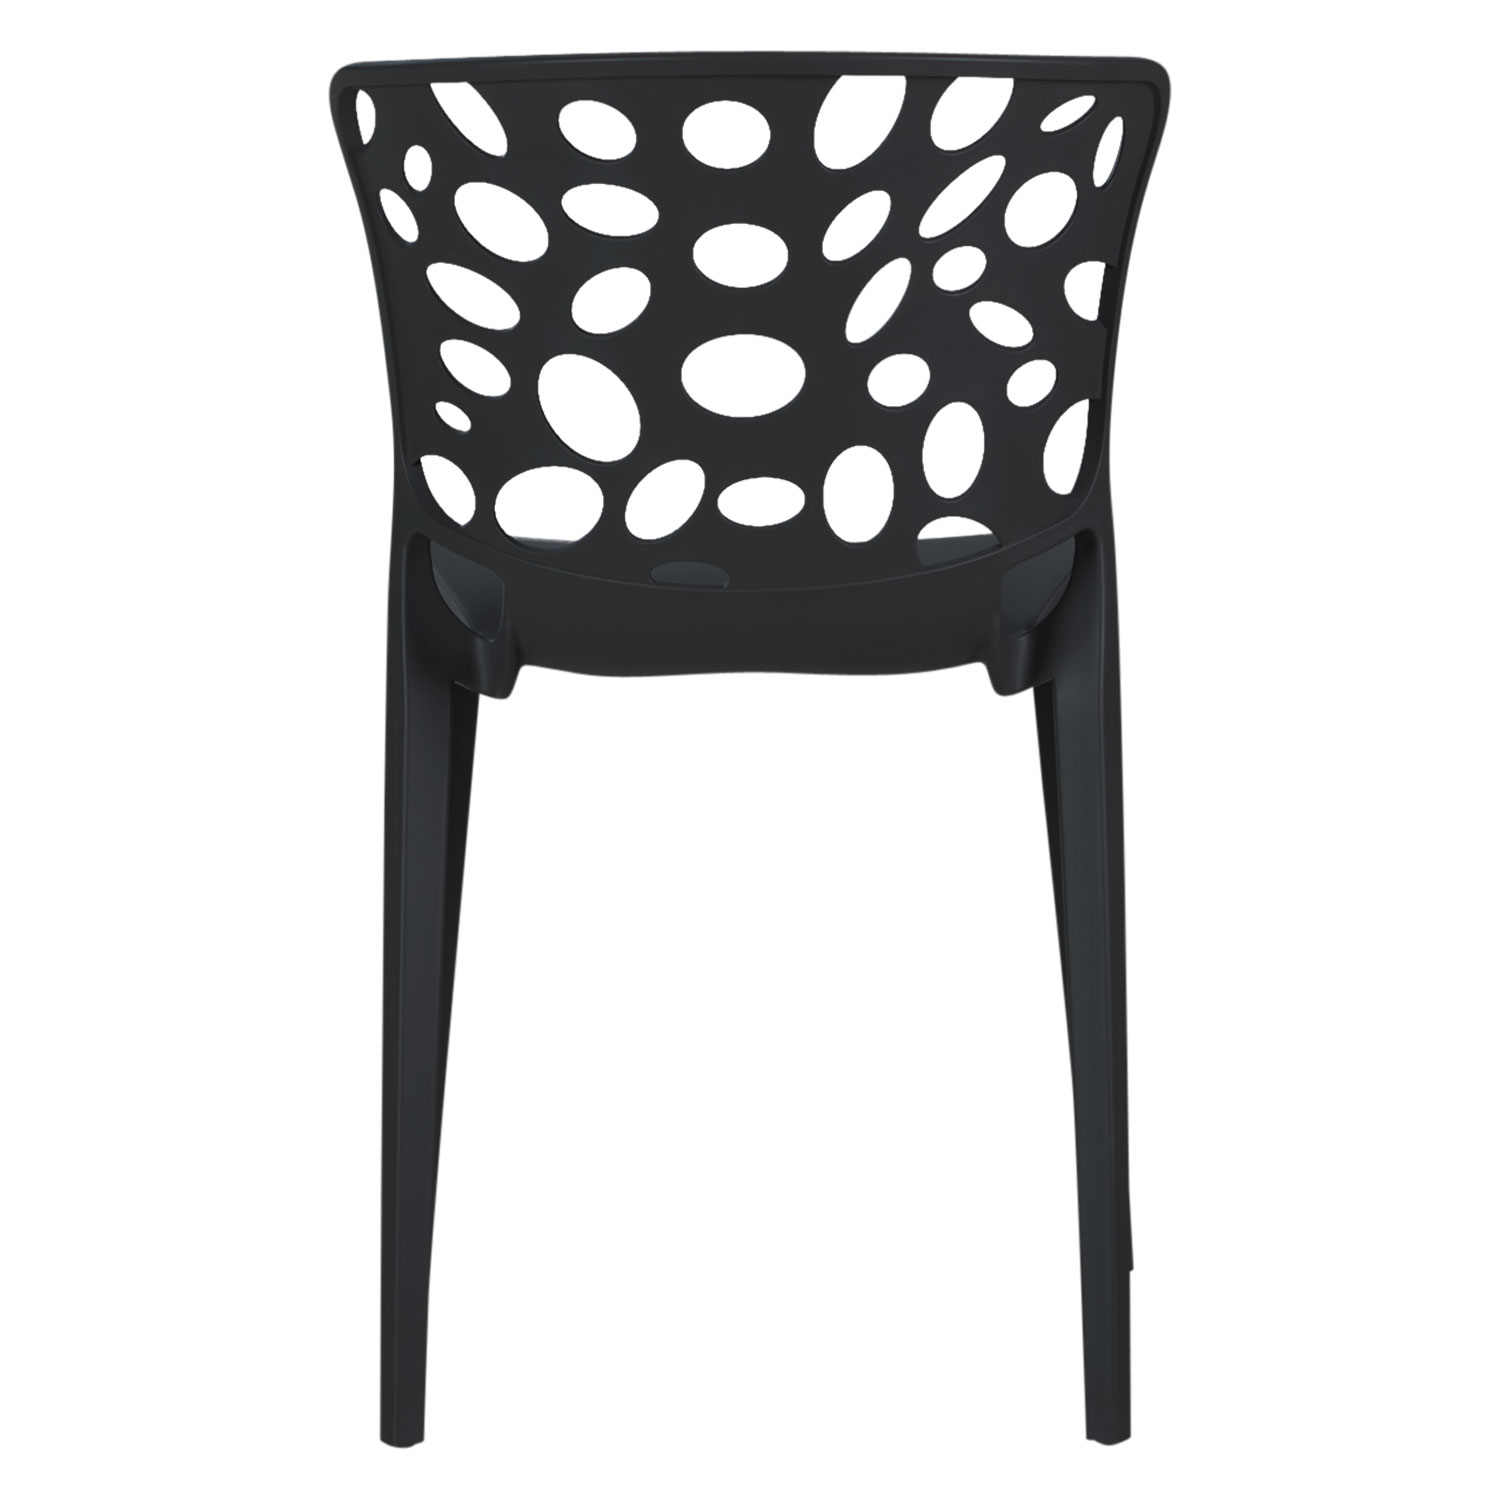 Chaise de jardin Lot de 4 Moderne Noir Chaises design Plastique Chaises exterieur Chaises empilable Chaise de cuisine